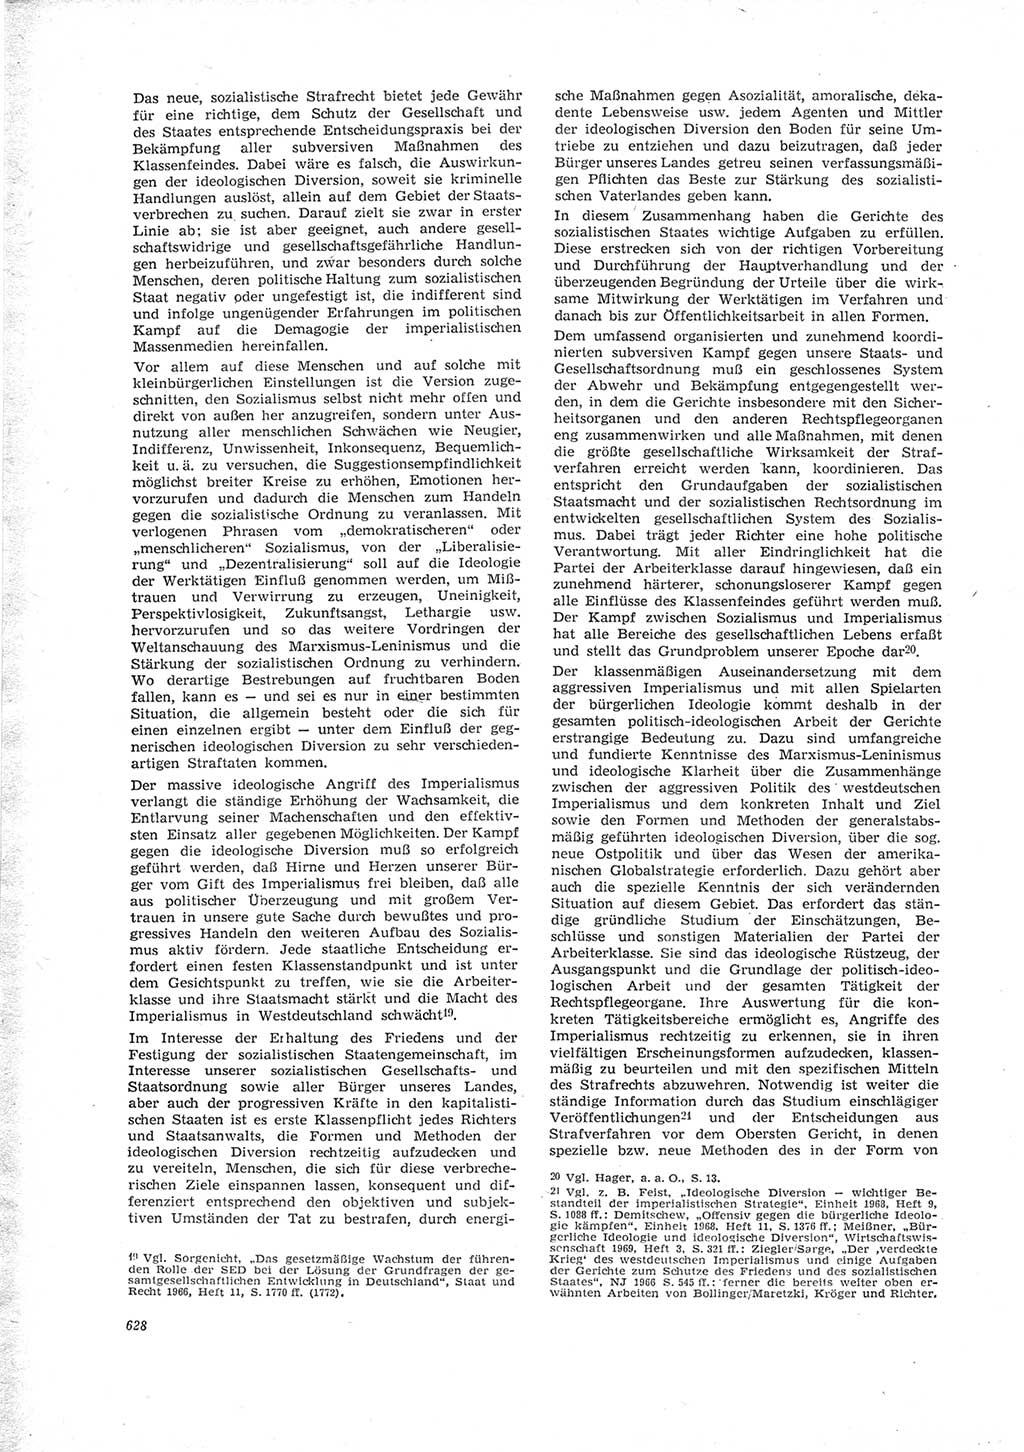 Neue Justiz (NJ), Zeitschrift für Recht und Rechtswissenschaft [Deutsche Demokratische Republik (DDR)], 23. Jahrgang 1969, Seite 628 (NJ DDR 1969, S. 628)